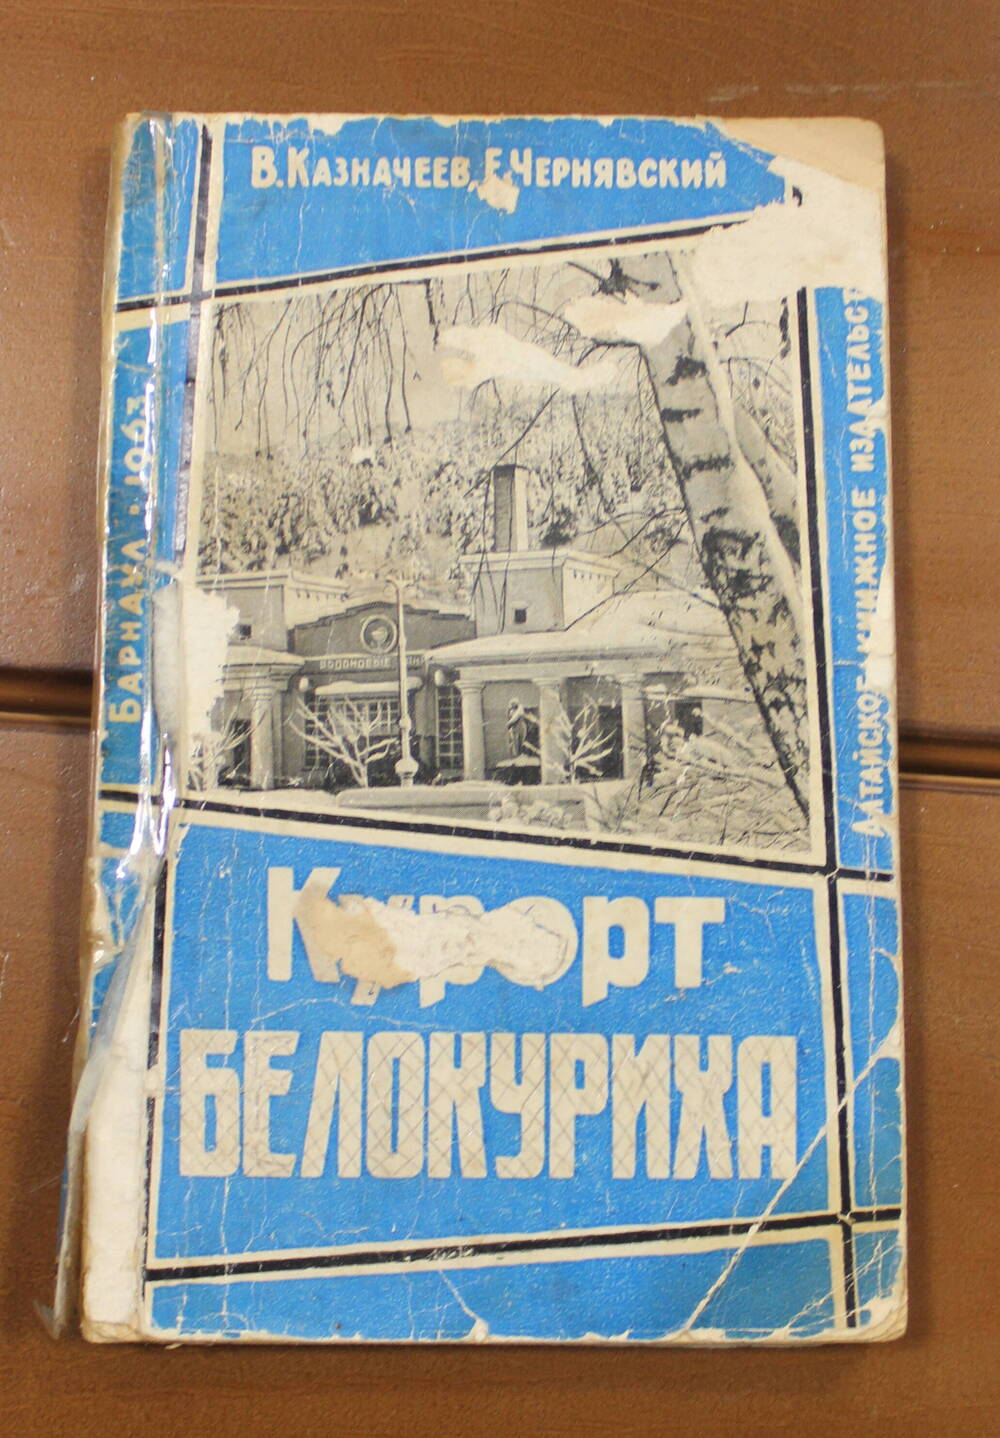 Книга Курорт Белокуриха, В.П. Казначеев, Е.Ф. Чернявский, г. Барнаул, 1963г.